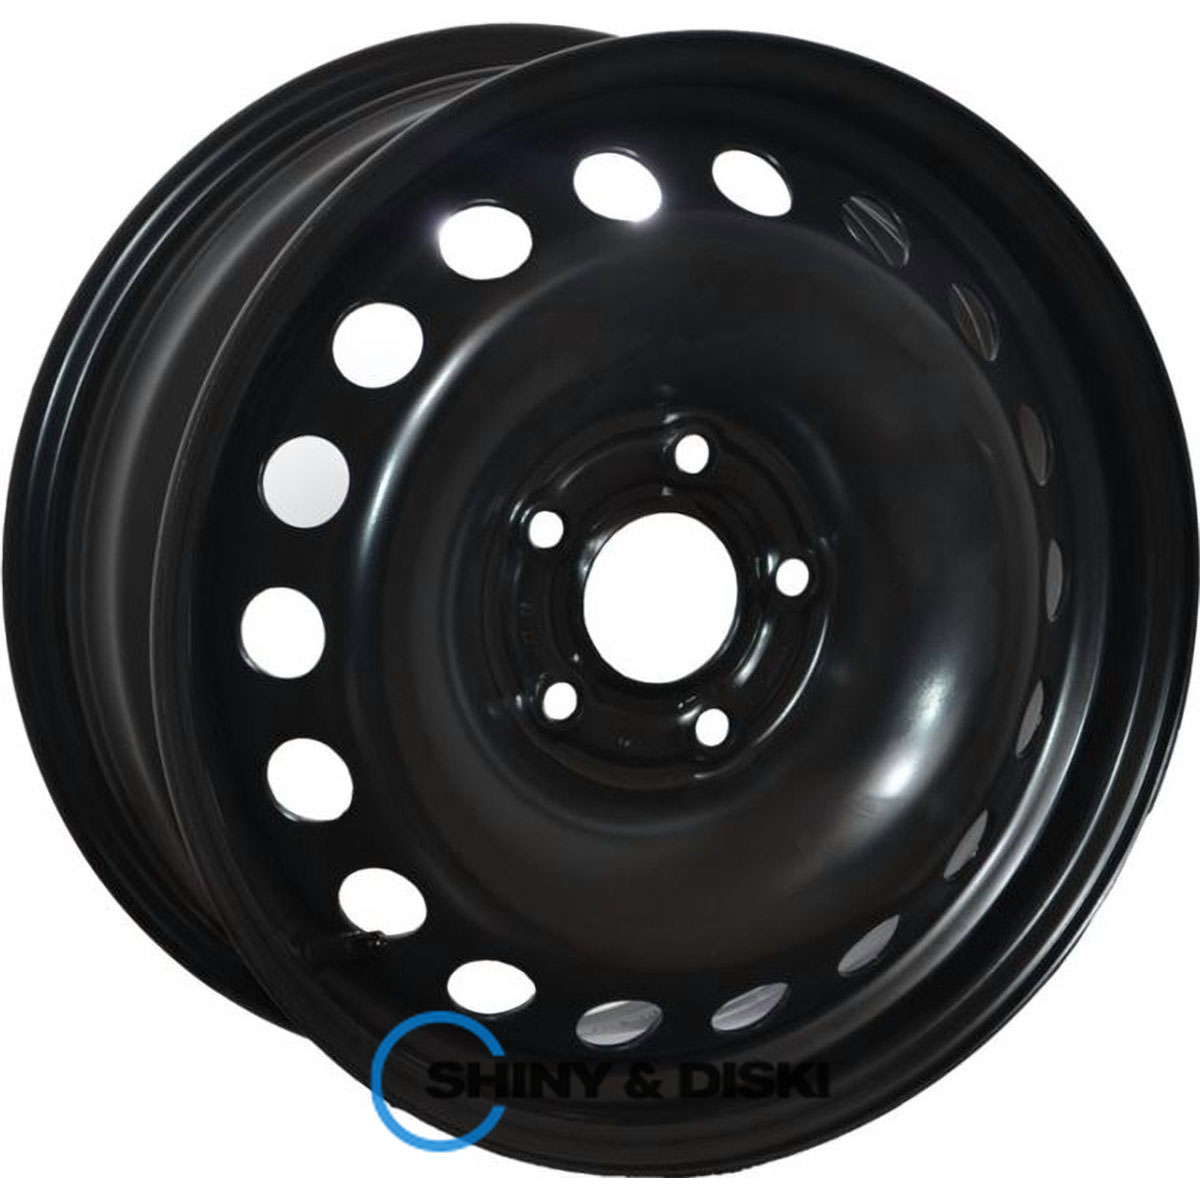 av wheels (black) renault/nissan oem r16 w6.5 pcd5x114.3 e47 dia66.1